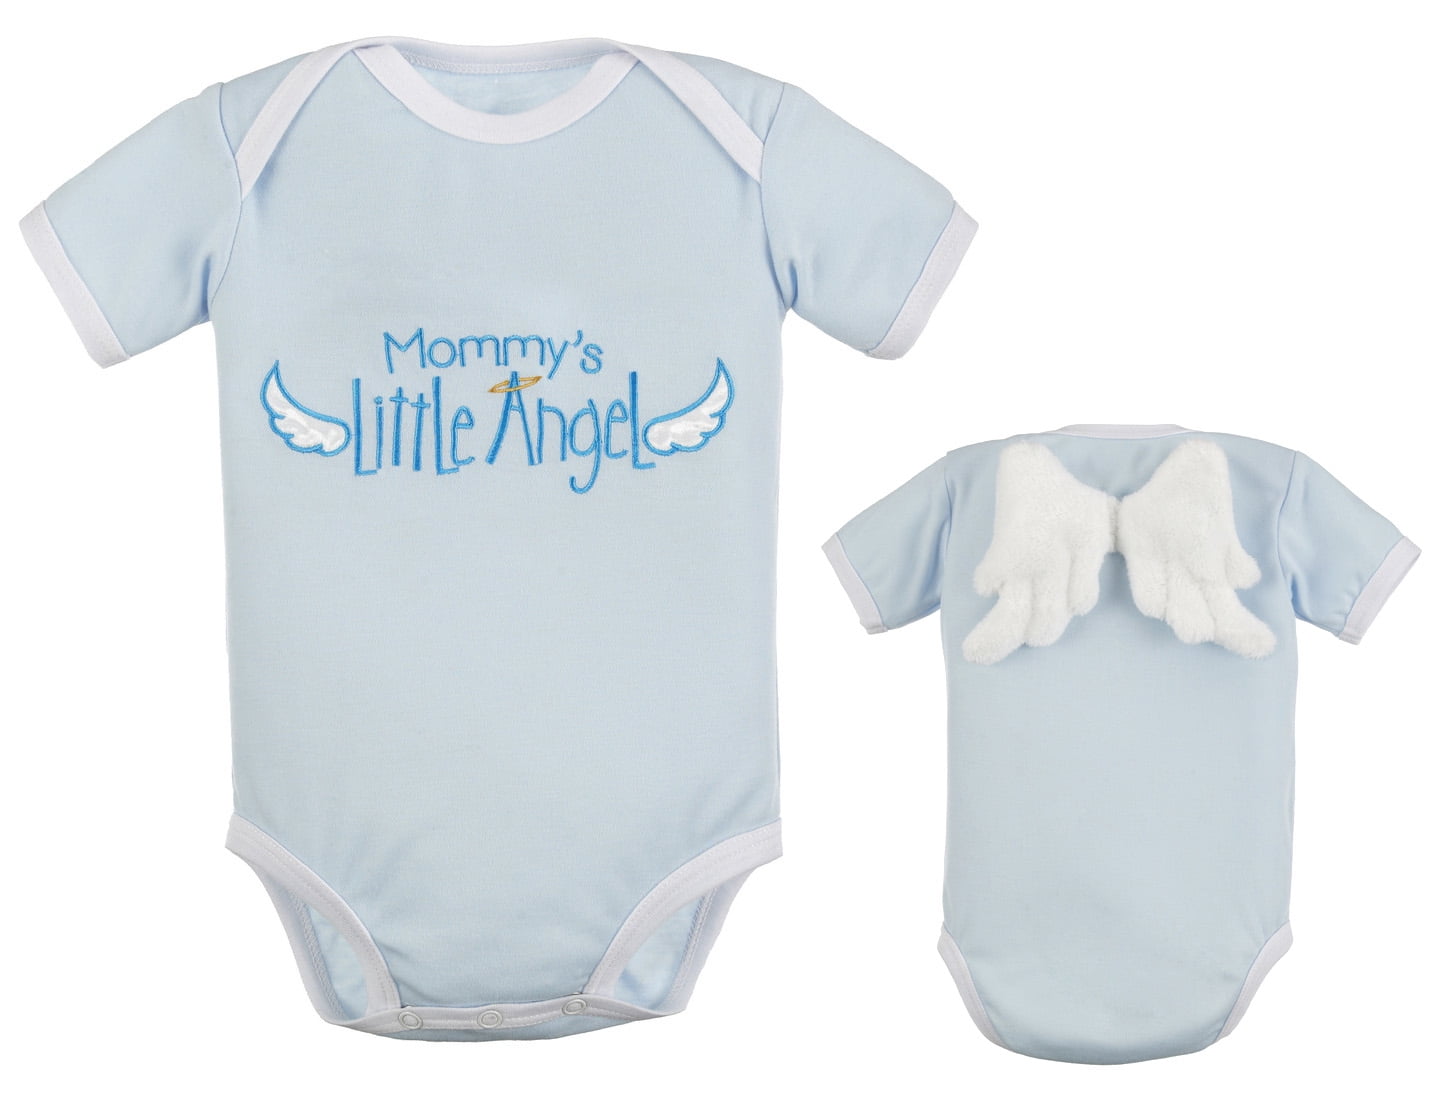 Babygrow Girls Boys Unisex Newborn White Little Angel Pure Cotton Romper Sleepsuit 0-6 Months